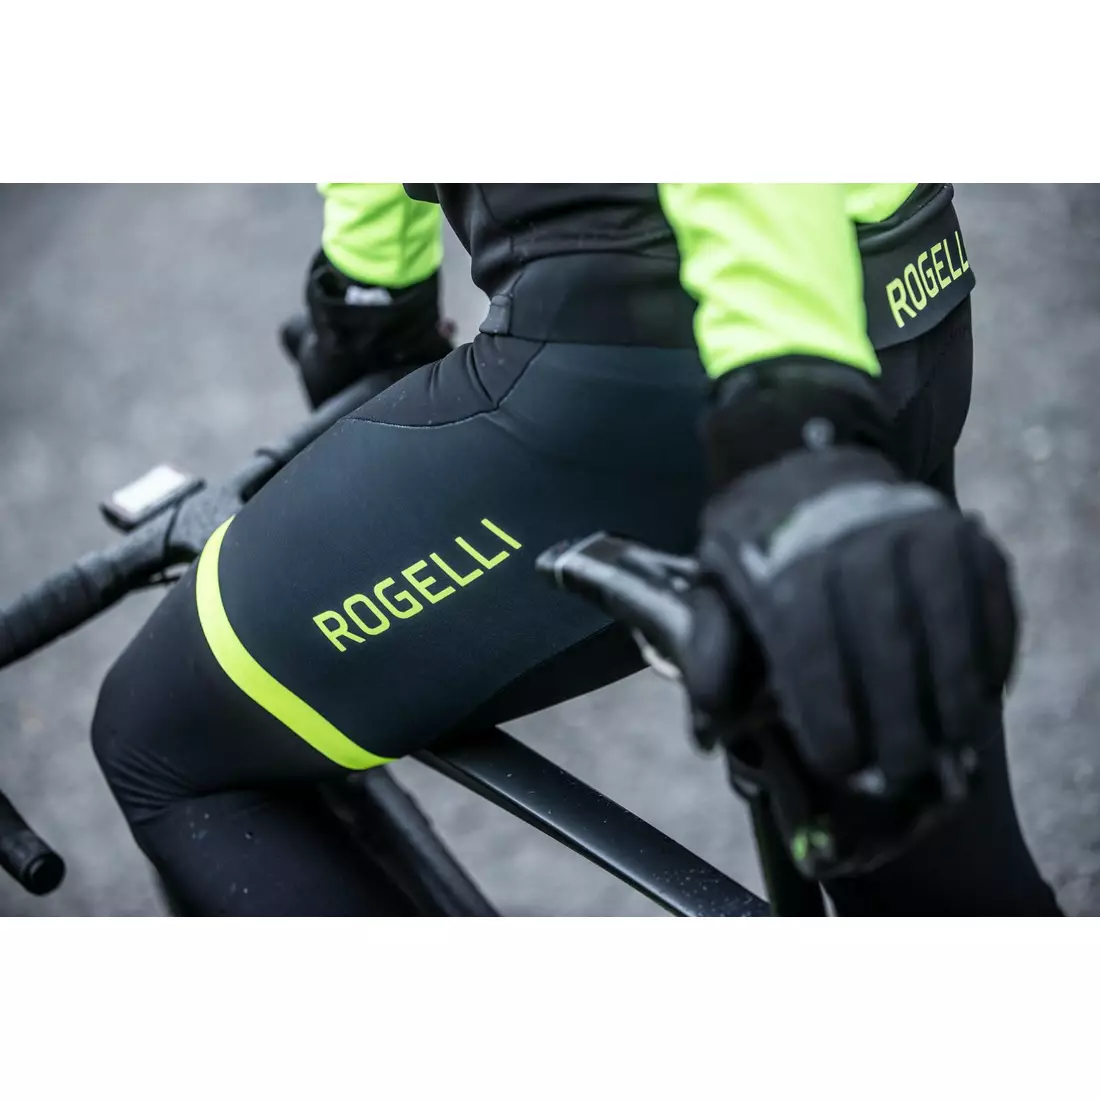 ROGELLI FUSE pánske zateplené cyklistické nohavice so šľapkami, čierne a fluórové